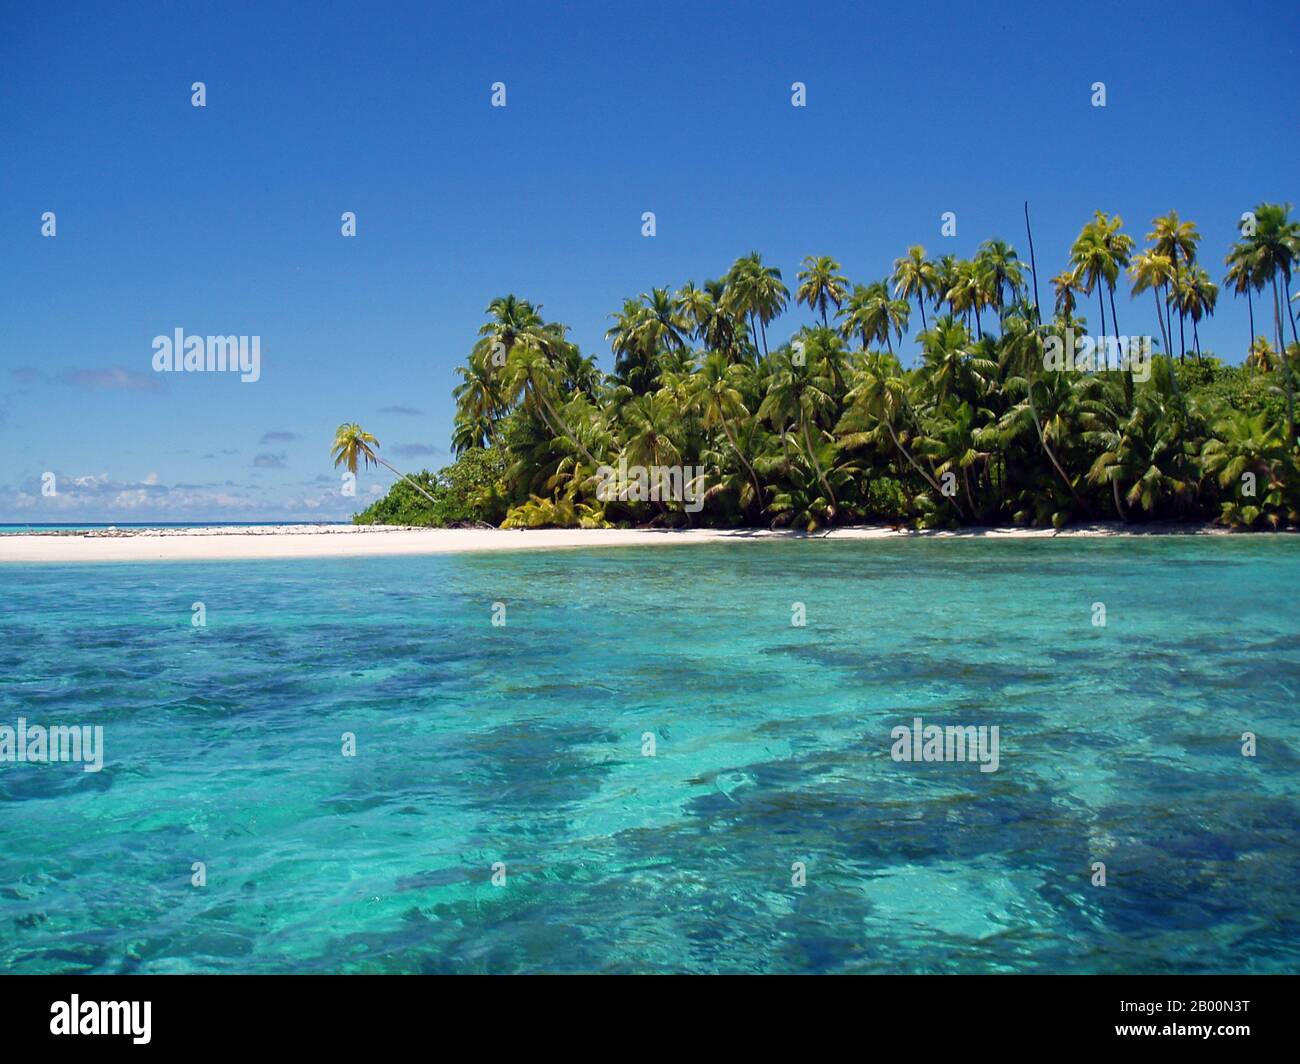 BIOT (Britisches Territorium im Indischen Ozean): Salomons Atoll, Foto von Anne Sheppard (CC BY 3.0 License). Das Britische Territorium im Indischen Ozean (BIOT) oder Chagos-Inseln (früher die Ölinseln) ist ein Überseegebiet des Vereinigten Königreichs, das im Indischen Ozean liegt, auf halbem Weg zwischen Afrika und Indonesien. Das Gebiet umfasst eine Gruppe von sieben Atollen, die mehr als 60 einzelne Inseln umfassen und etwa 500 Kilometer (310 Meilen) südlich des Archipels der Malediven liegen. Die größte Insel ist Diego Garcia (Fläche 44 km Quadrat), der Ort einer gemeinsamen militärischen Einrichtung des Vereinigten Königreichs und der USA. Stockfoto